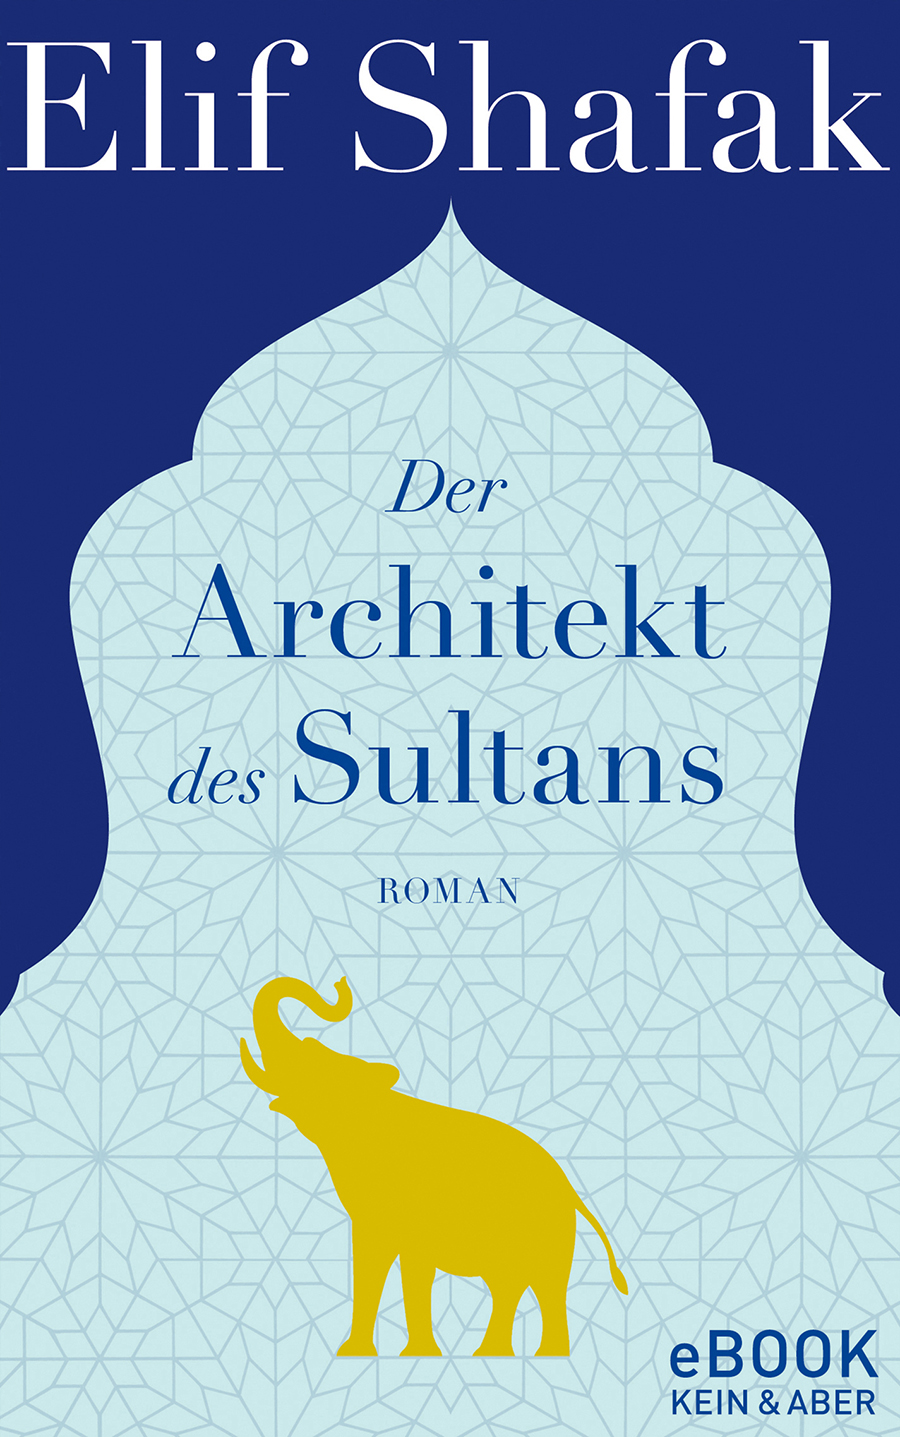 Titelbild zum Buch: Der Architekt des Sultans